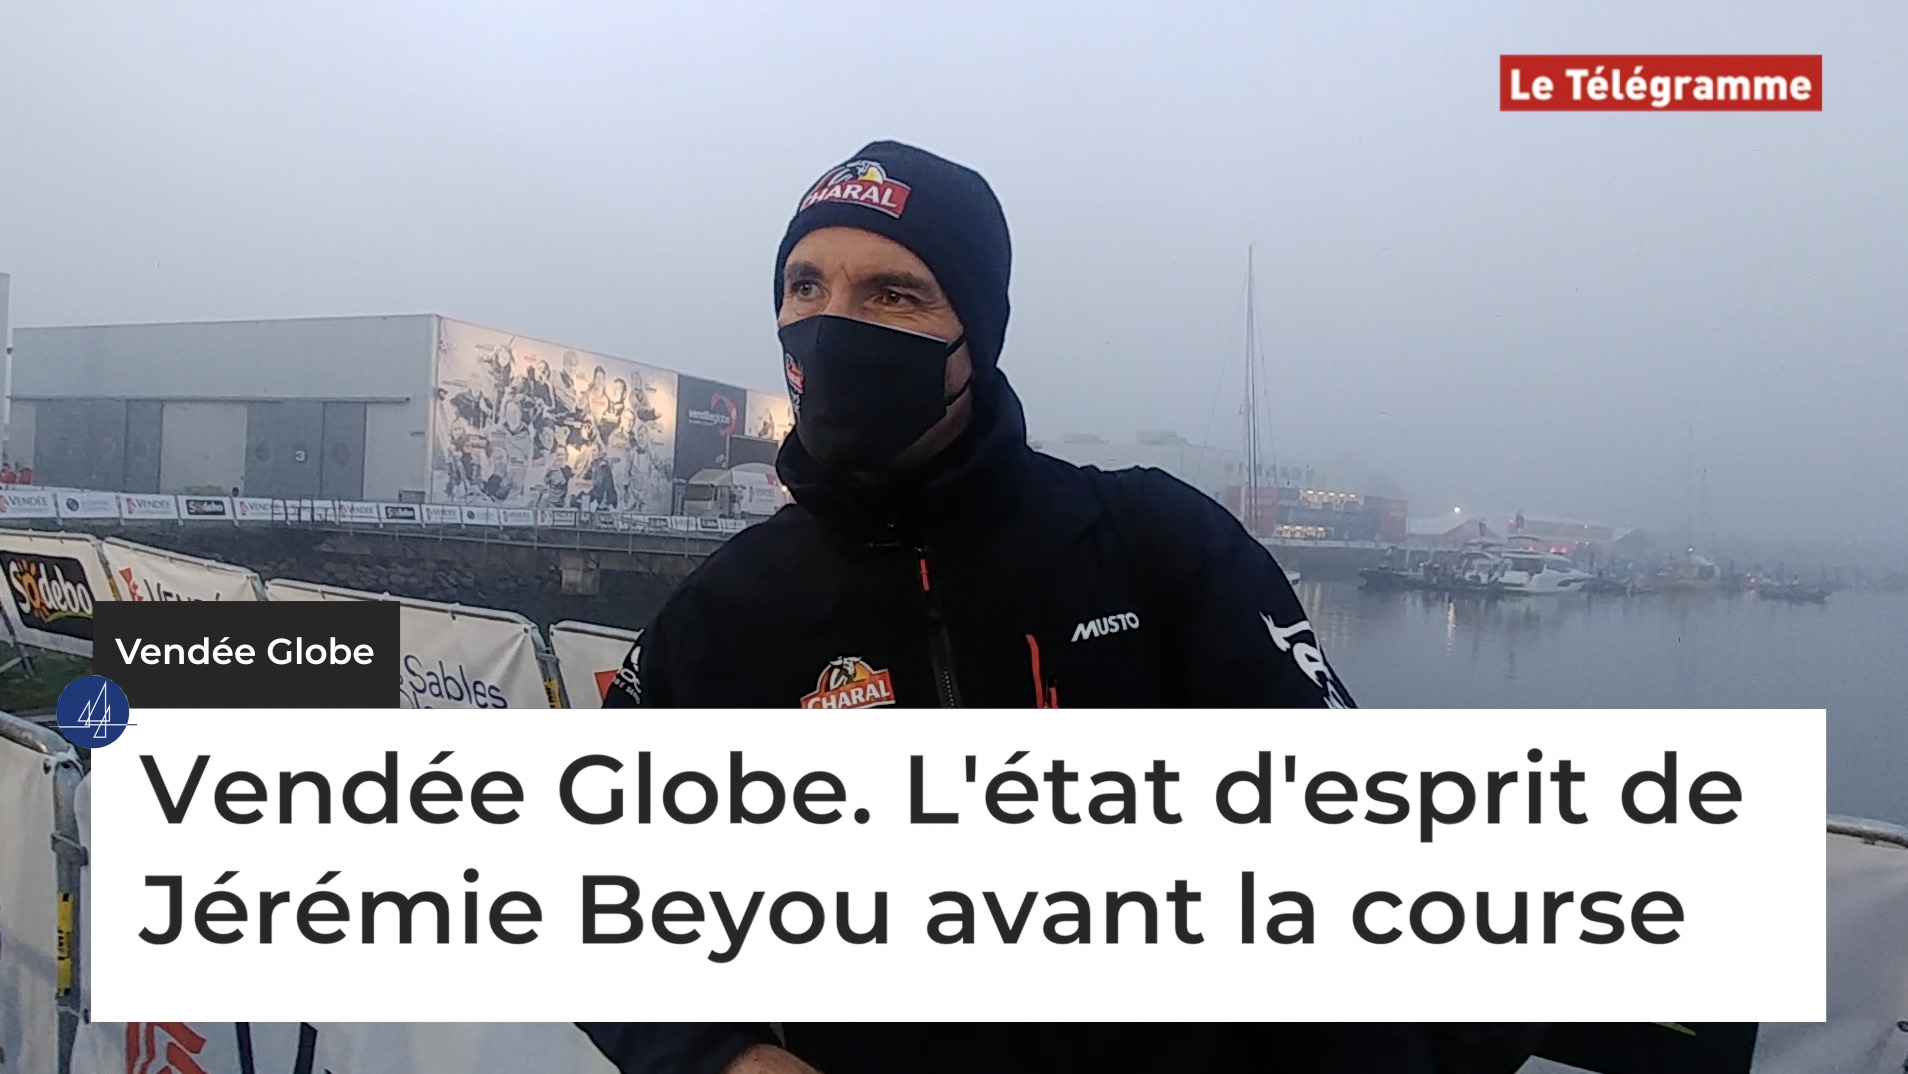 Vendée Globe. L'état d'esprit de Jérémie Beyou avant la course (Le Télégramme)